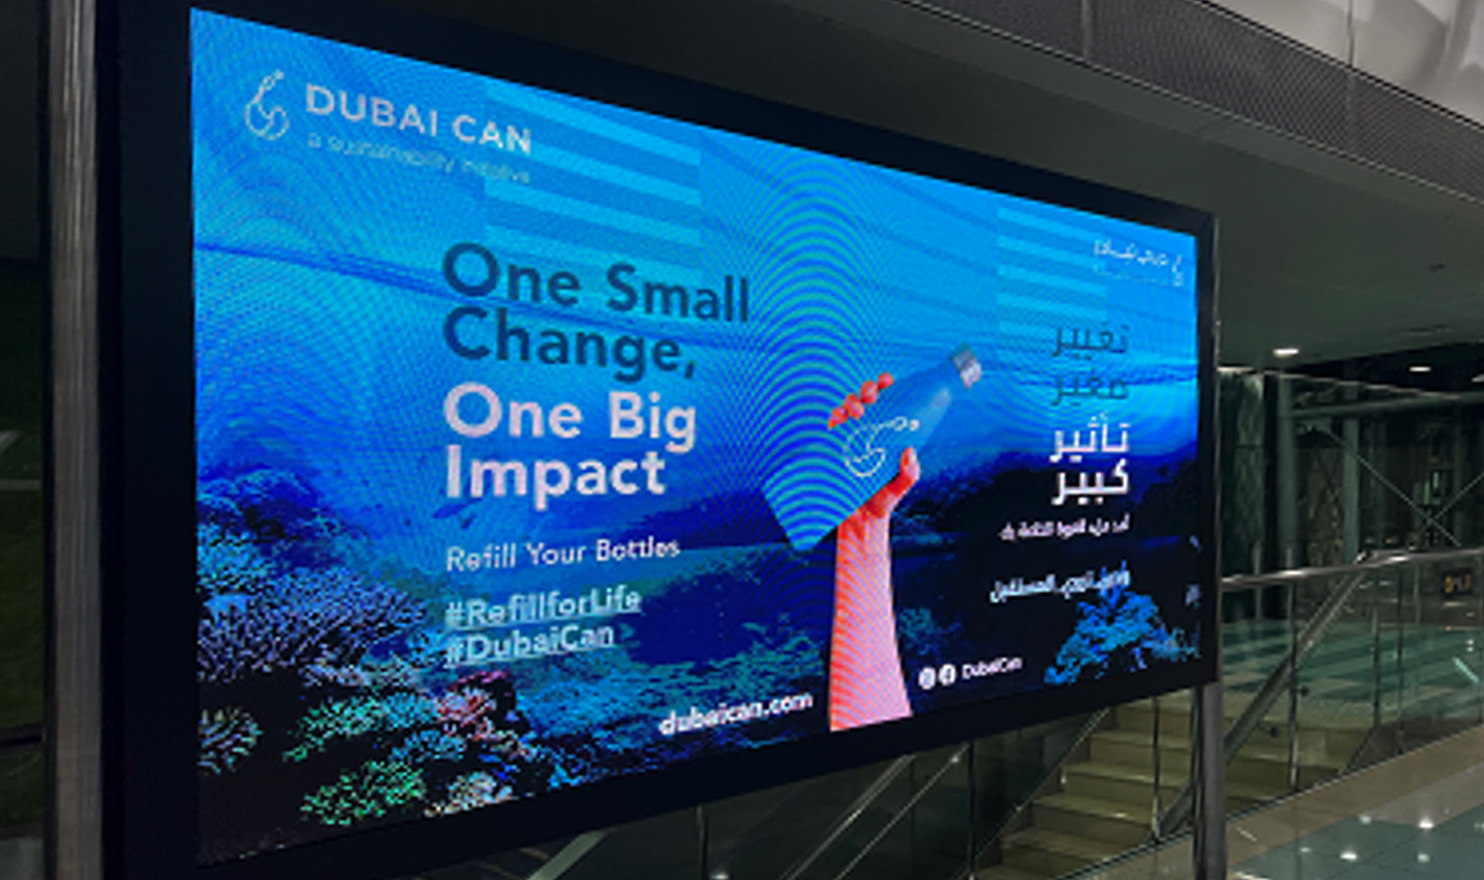 DUBAI CANプロジェクトを周知する駅の広告